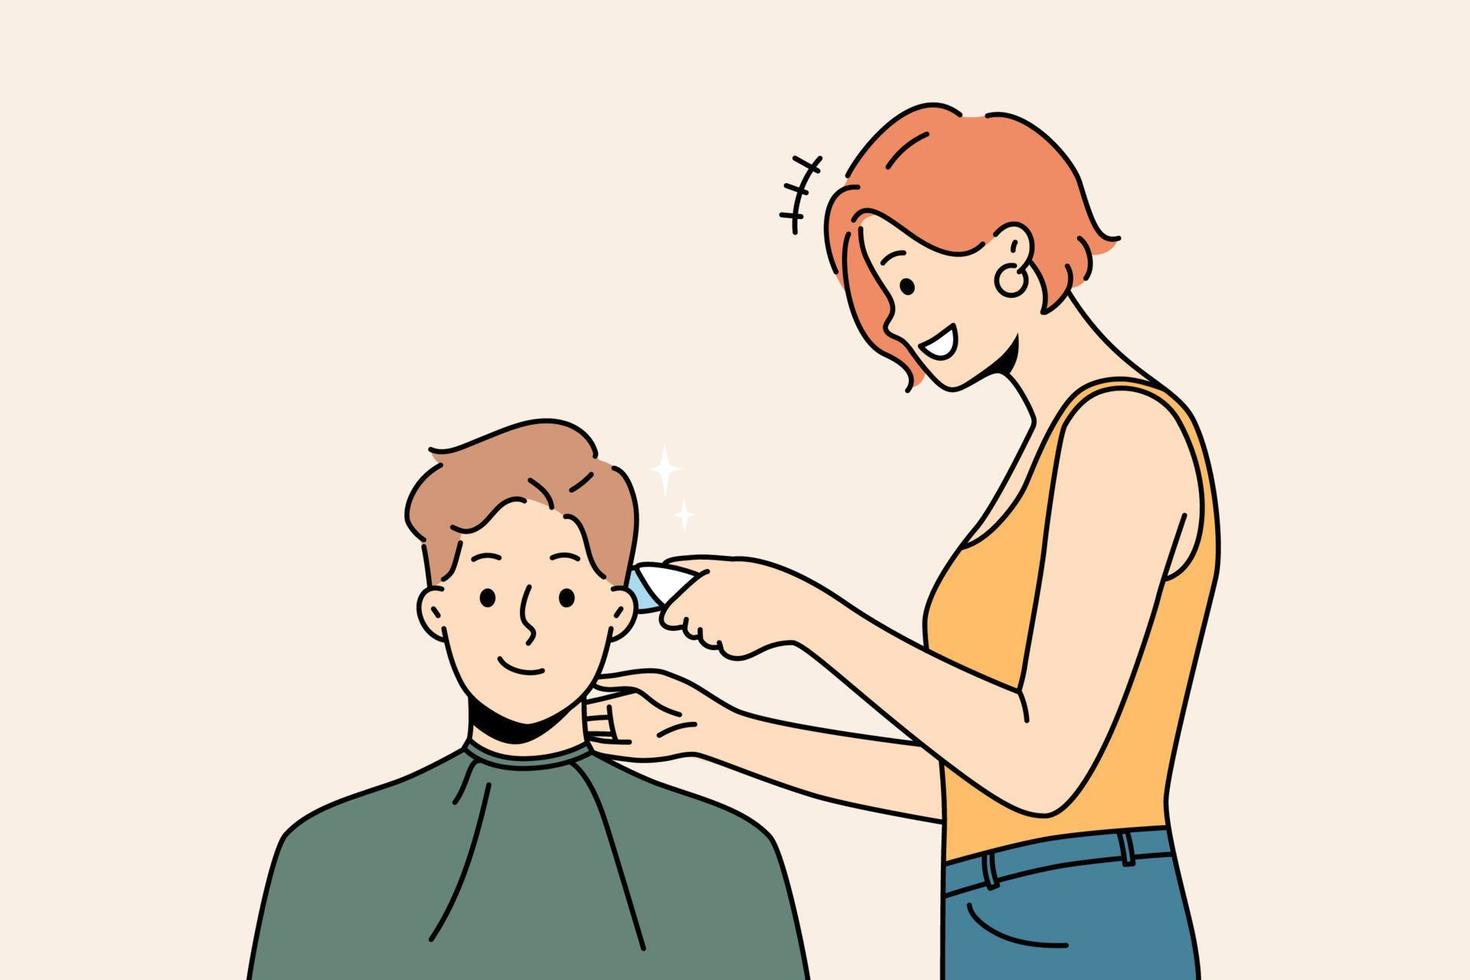 leende manlig klient skaffa sig frisyr i frisör. kvinna barberare ge frisyr till Lycklig man kund i salong. skönhet och hårvård. vektor illustration.